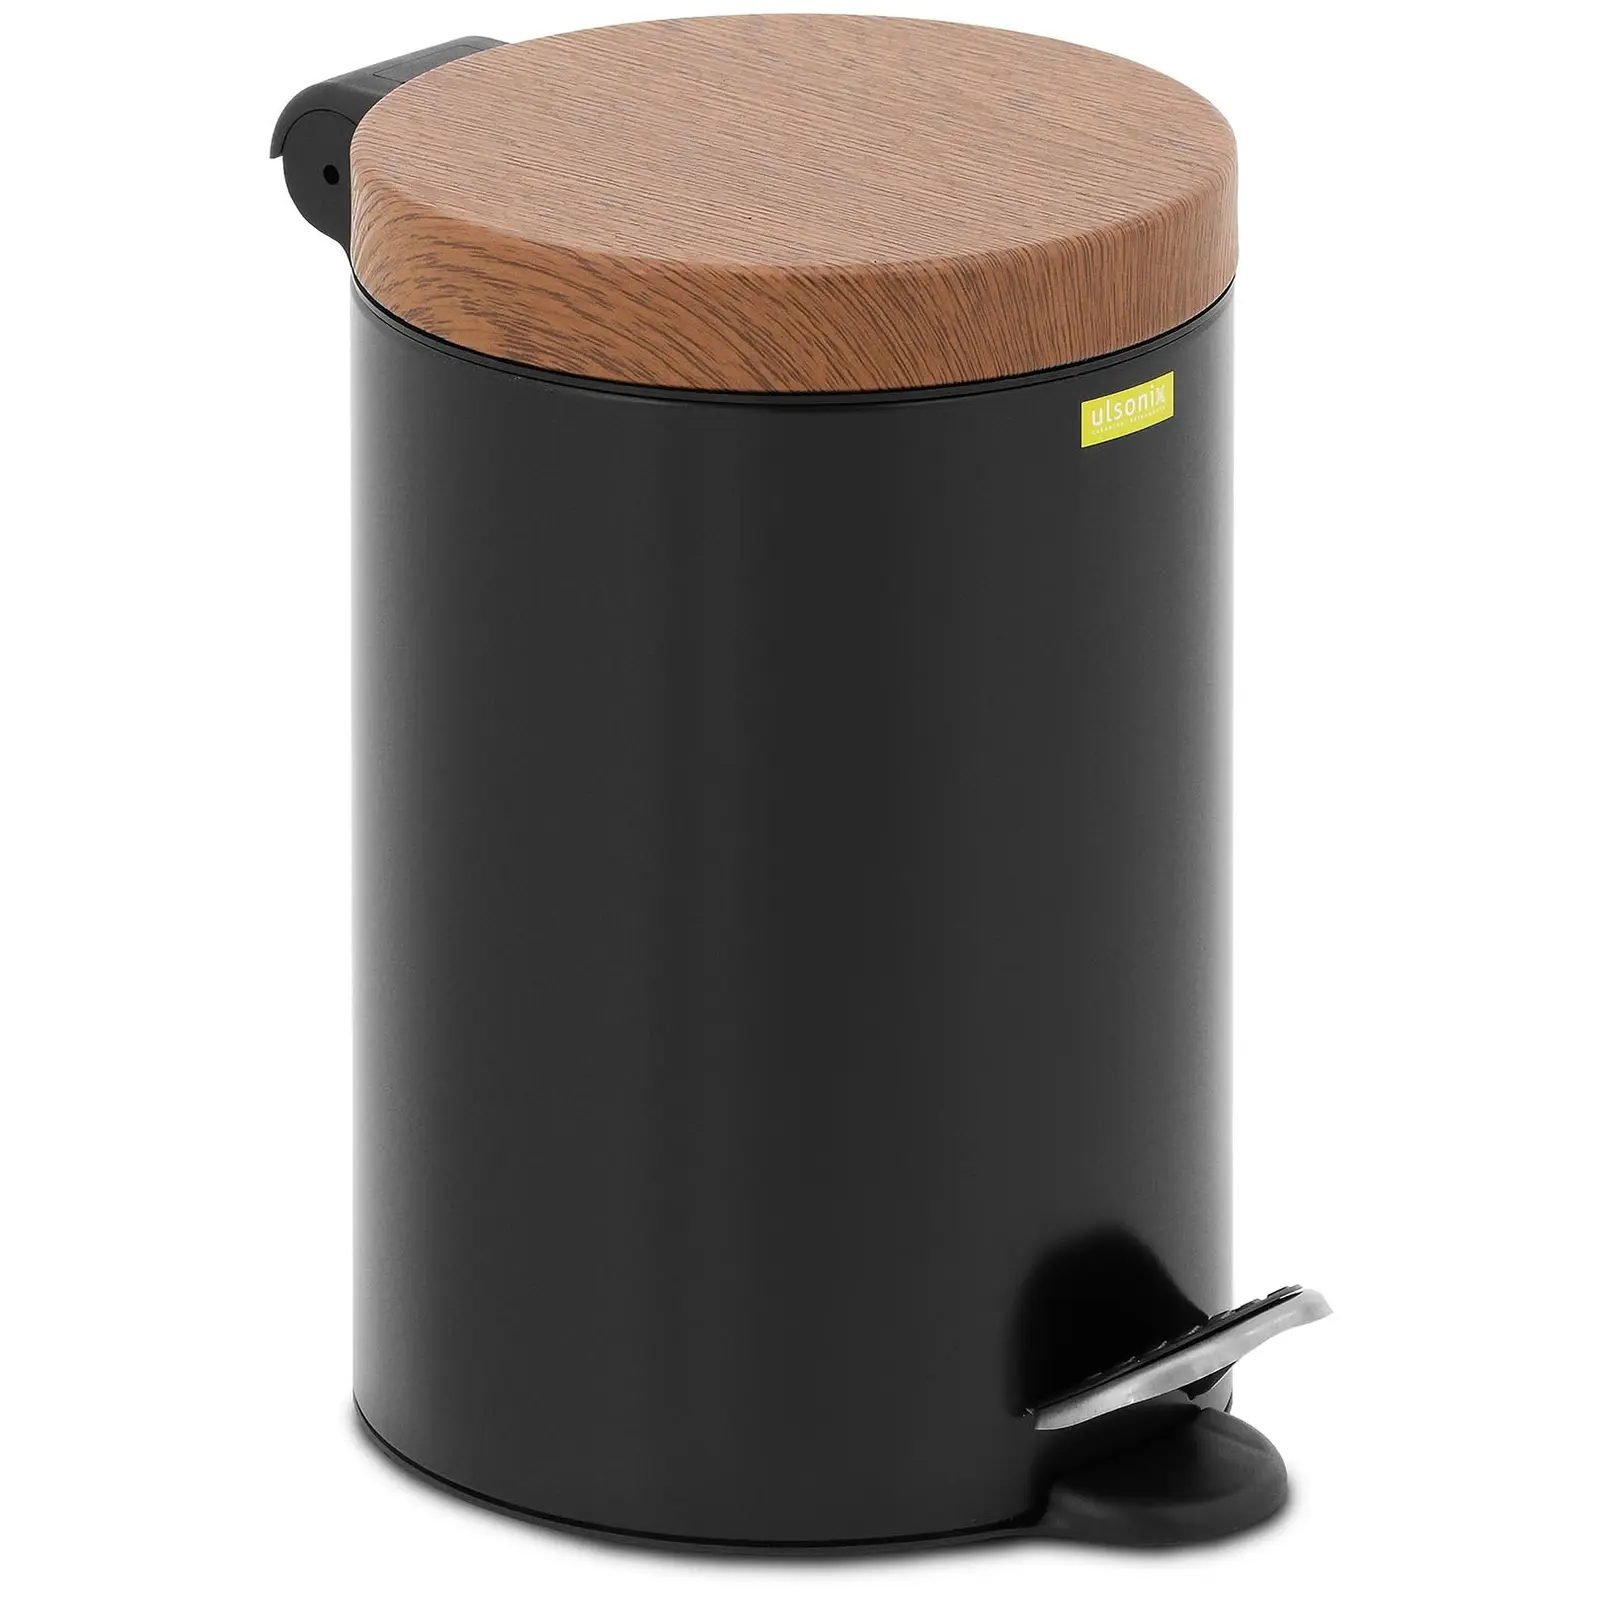 Nášlapný odpadkový koš s víkem ve vzhledu dřeva 3 l černý lakovaná ocel - Koše na odpadky ulsonix